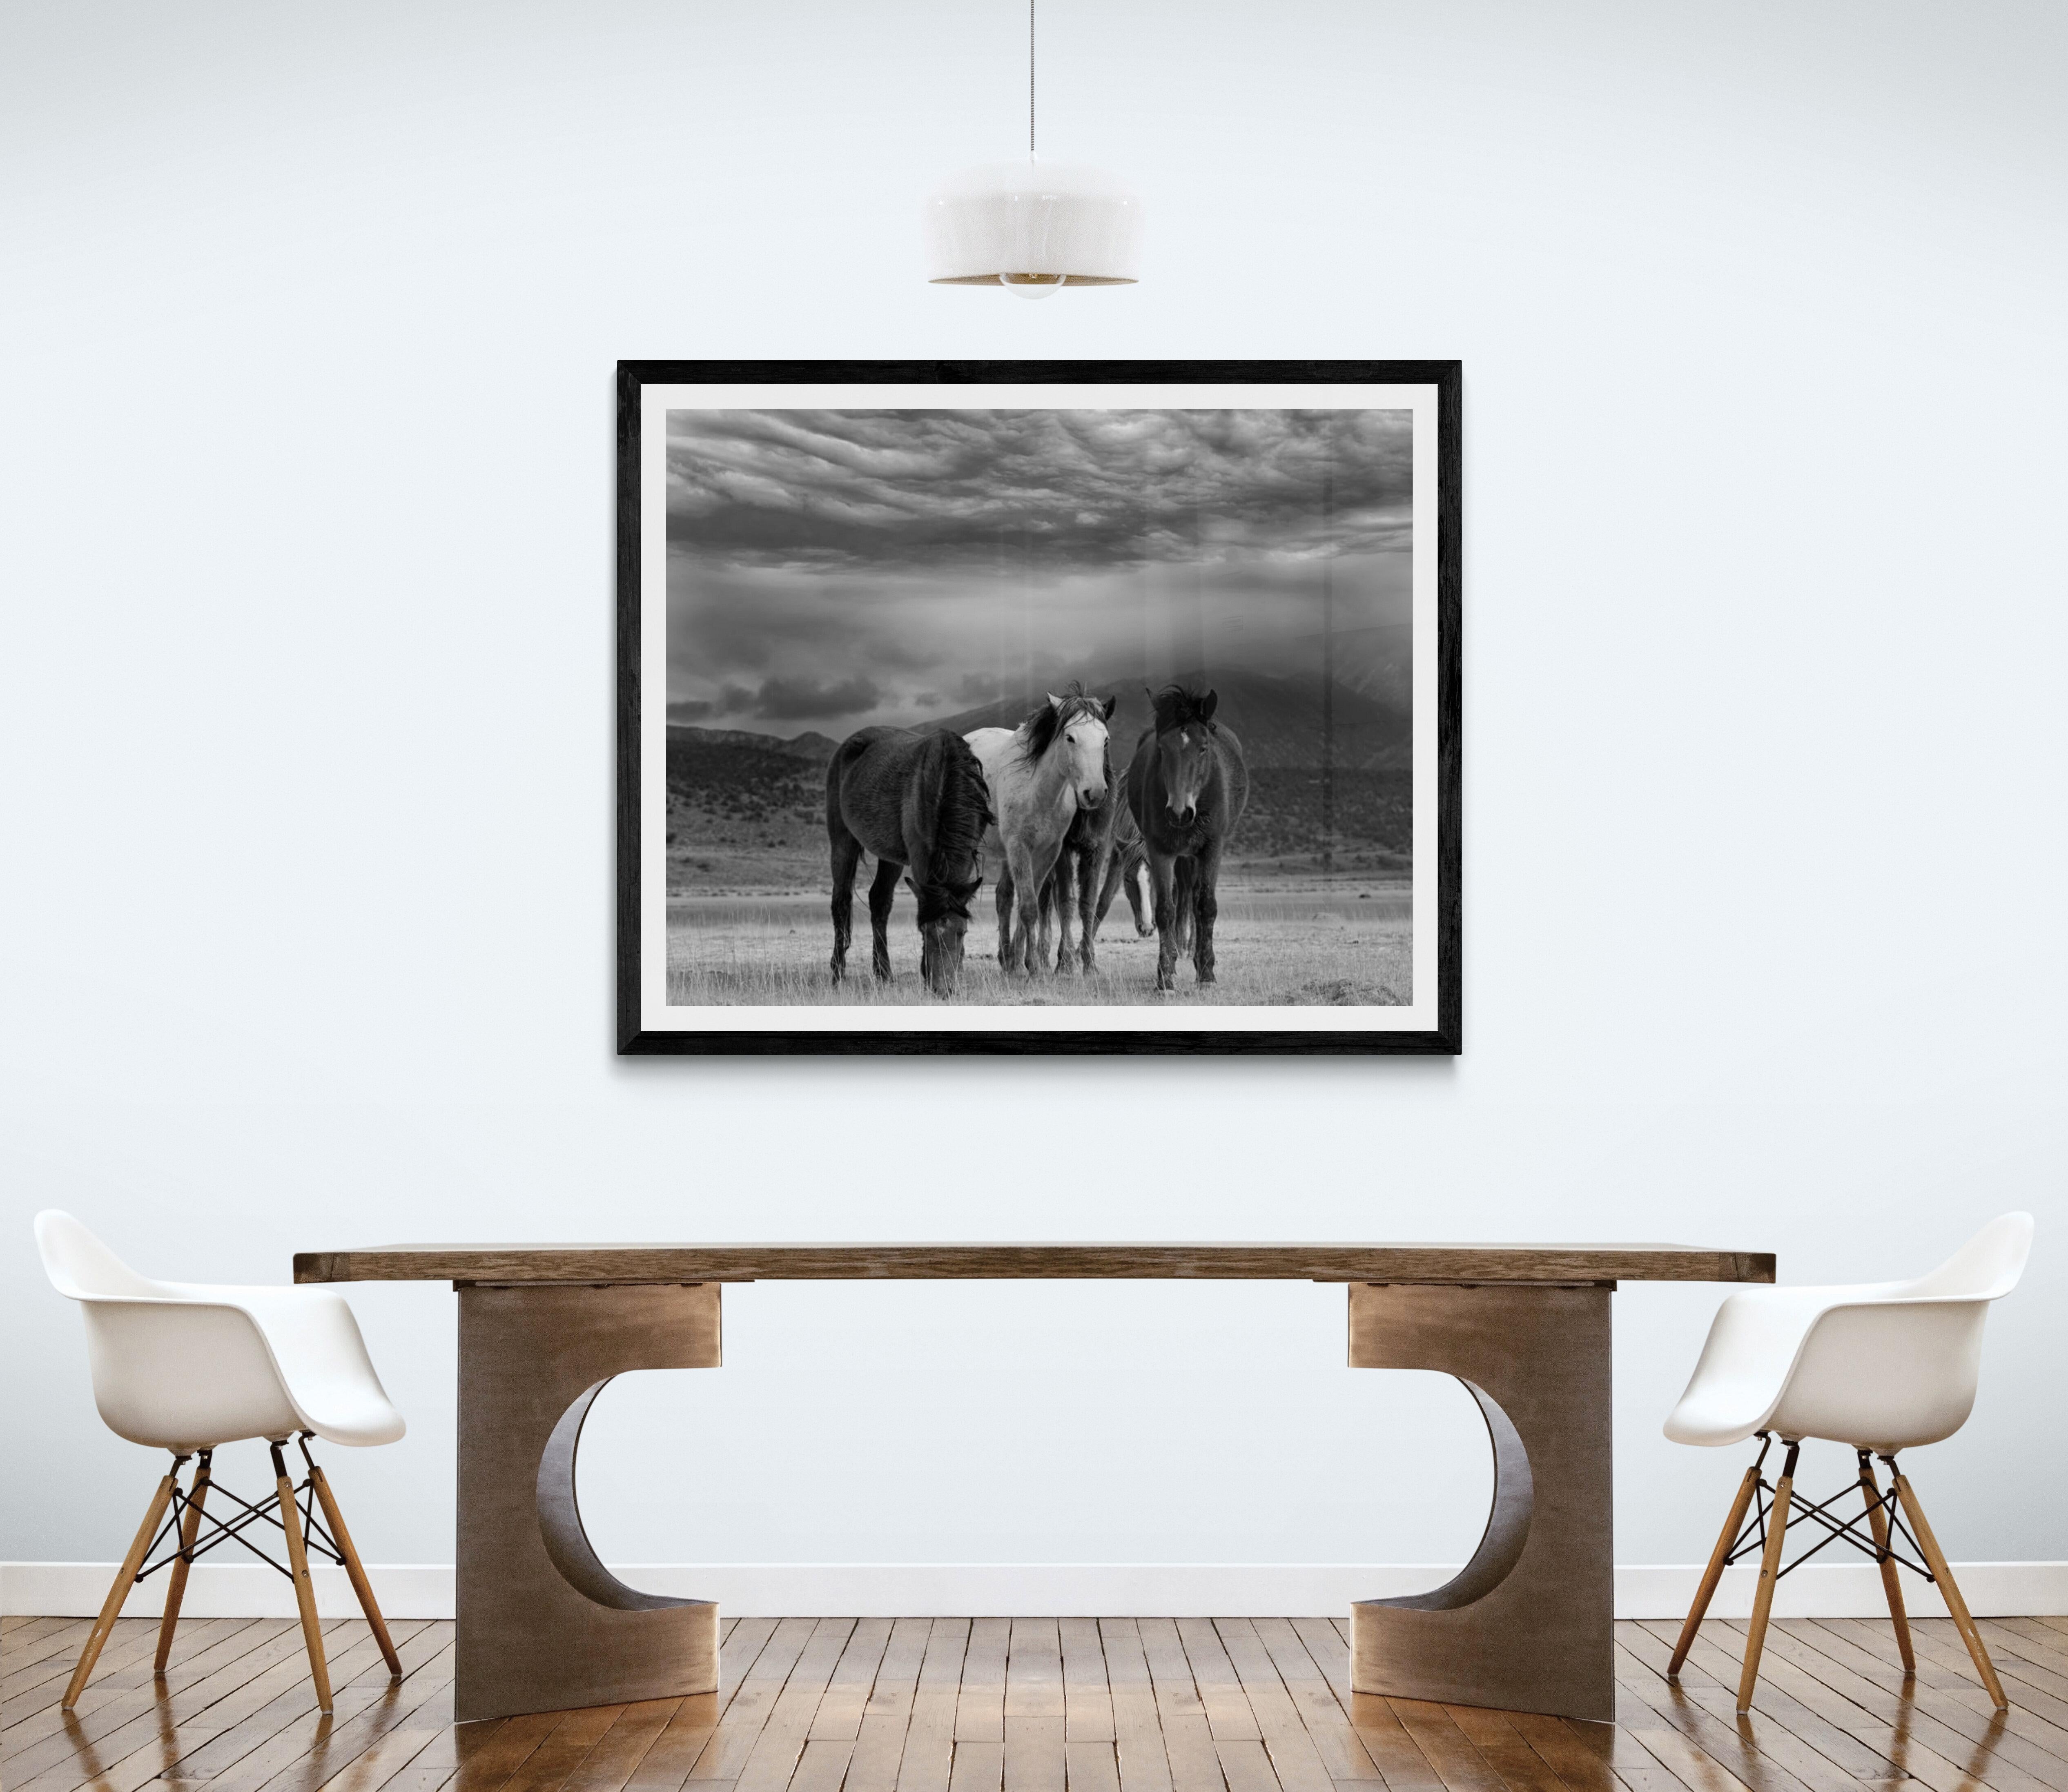 Il s'agit d'une photographie contemporaine en noir et blanc de chevaux sauvages d'Amérique du Nord.
Photographie par Shane Russeck
Imprimé sur du papier d'archives 
Encadrement disponible. Renseignez-vous sur les tarifs. 

 Shane Russeck s'est forgé